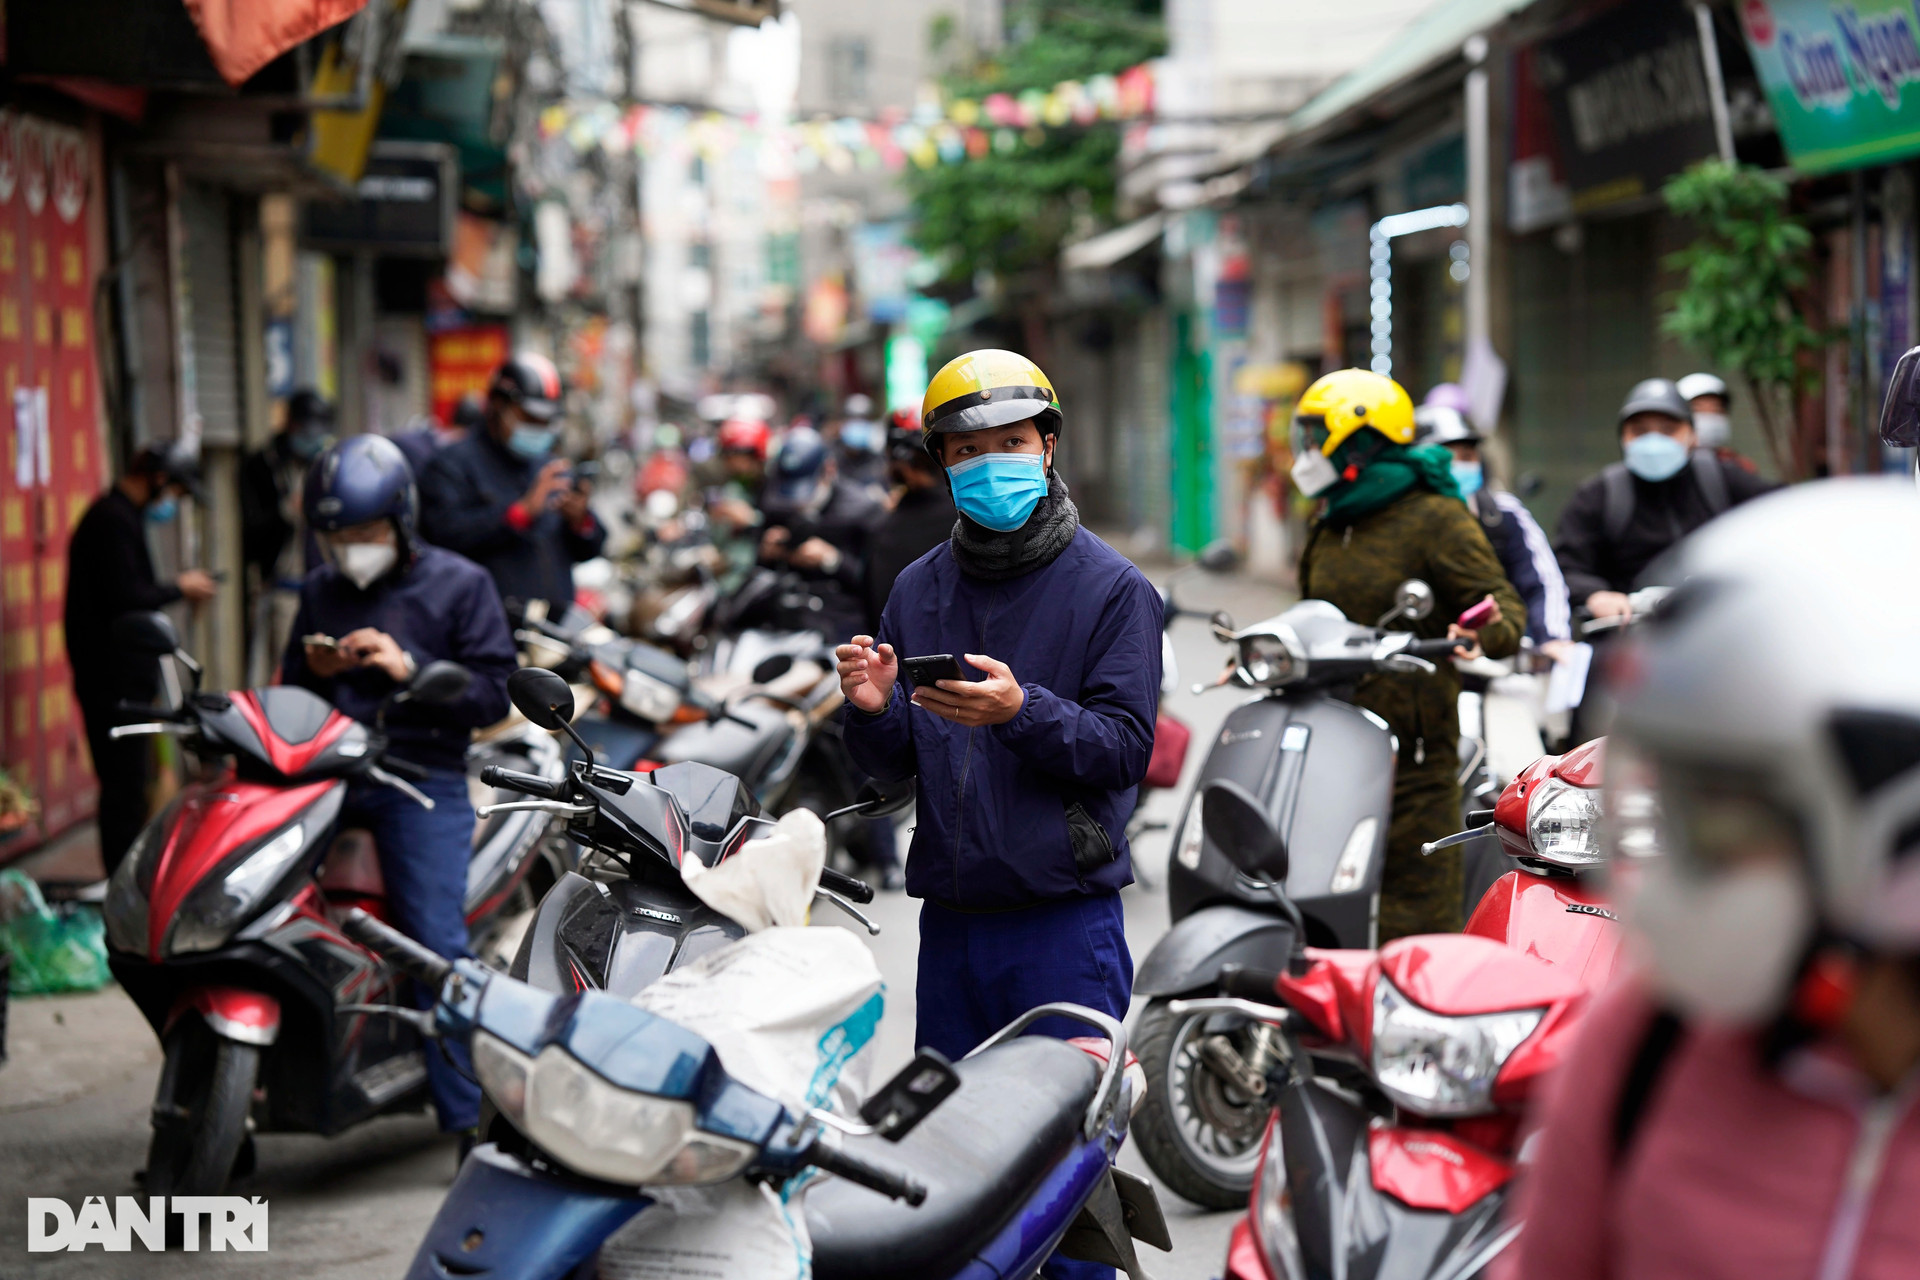 Hà Nội: Đông nghịt người quét QR Code tại ổ dịch Phú Đô - 2